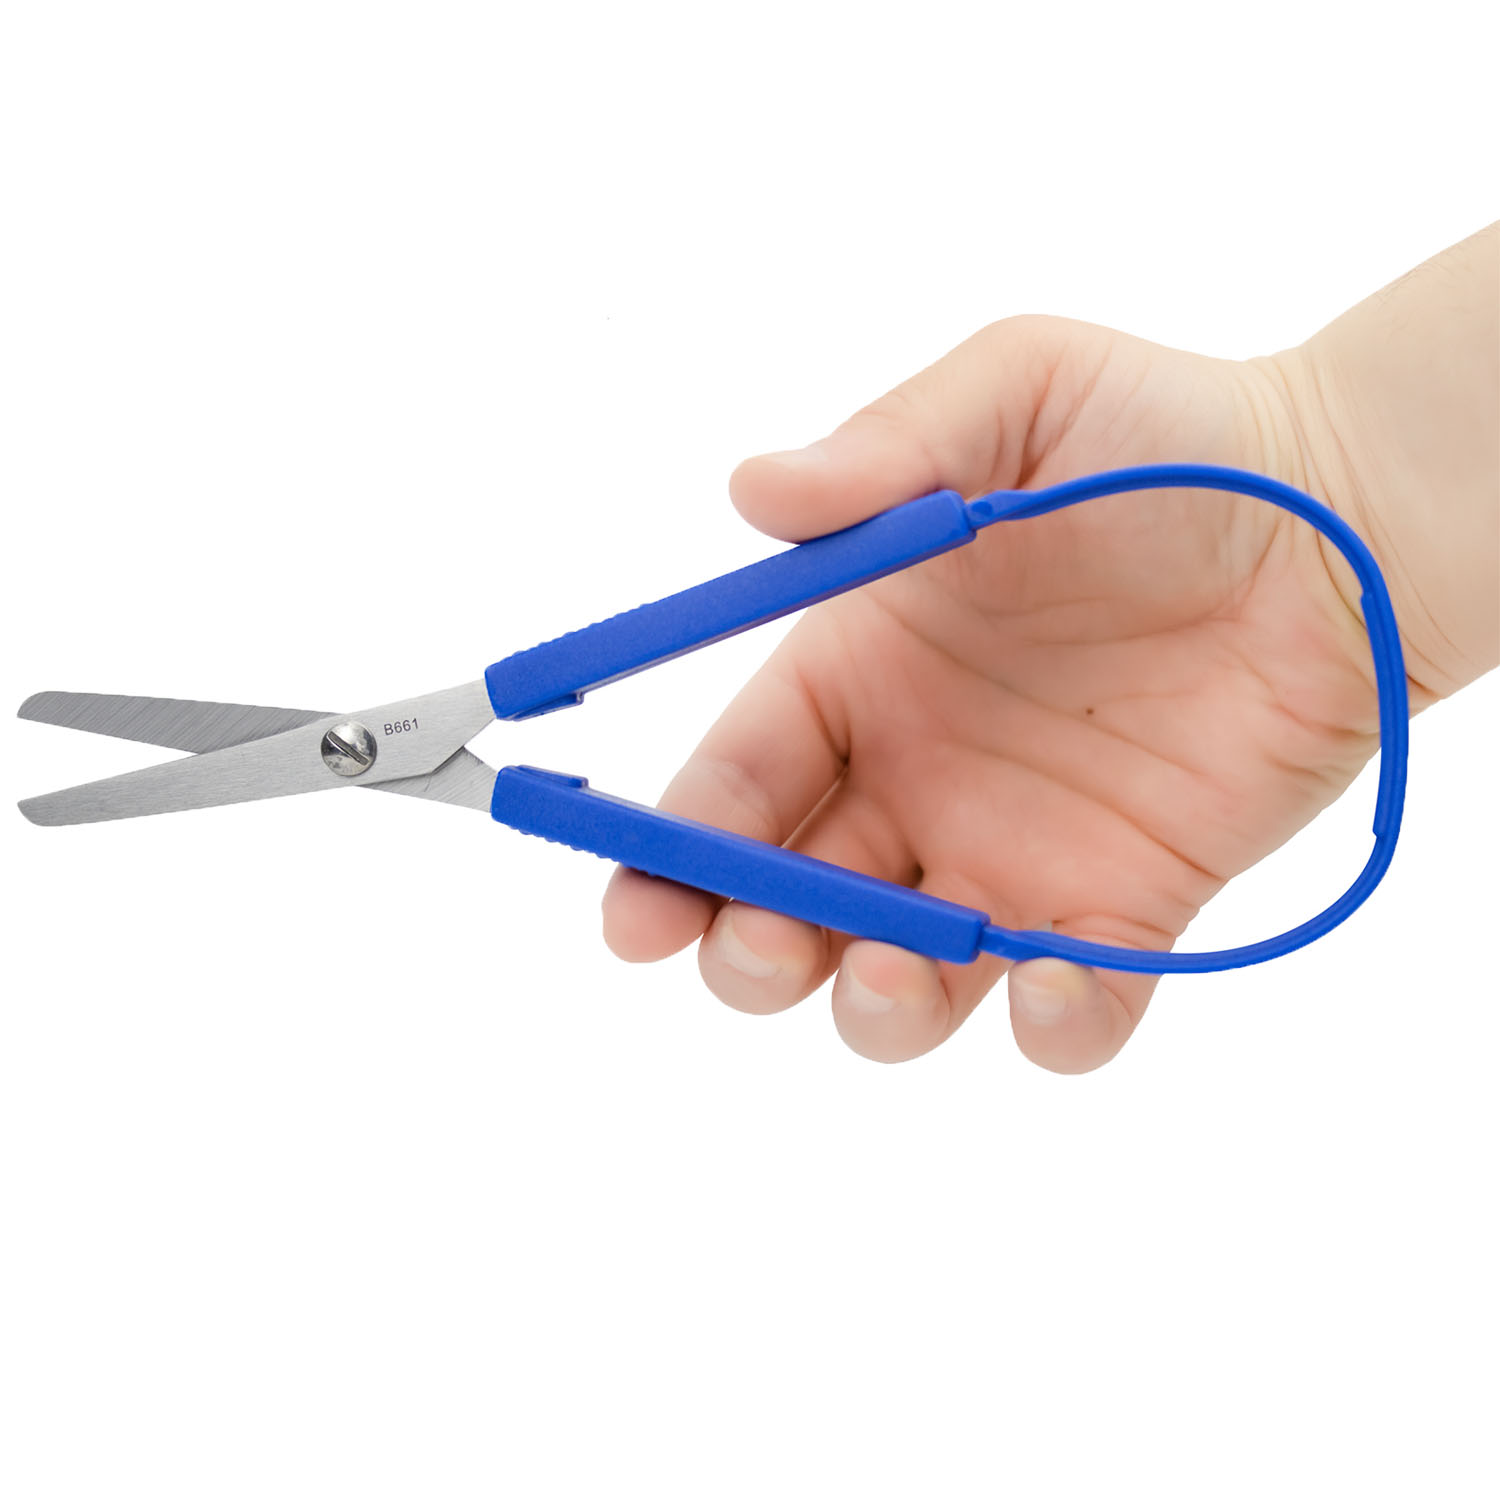 Special Education Handi-Squeeze Scissors